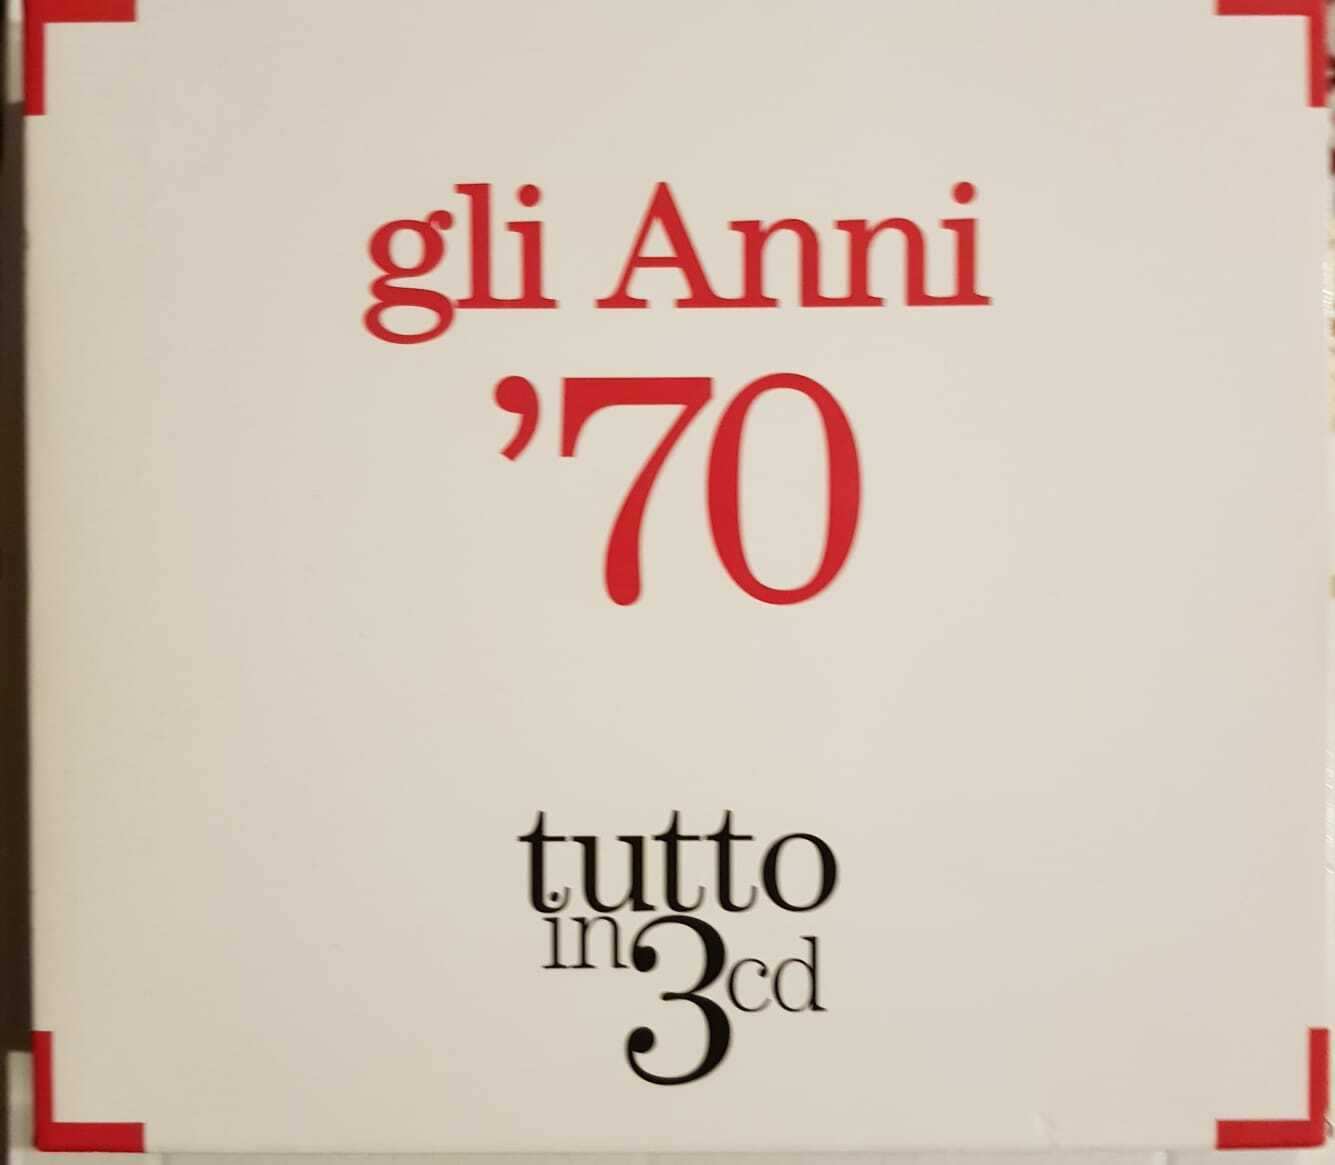 Artisti Vari - Gli anni '70 (Gaetano, Pravo, Battisti, Rossi..)